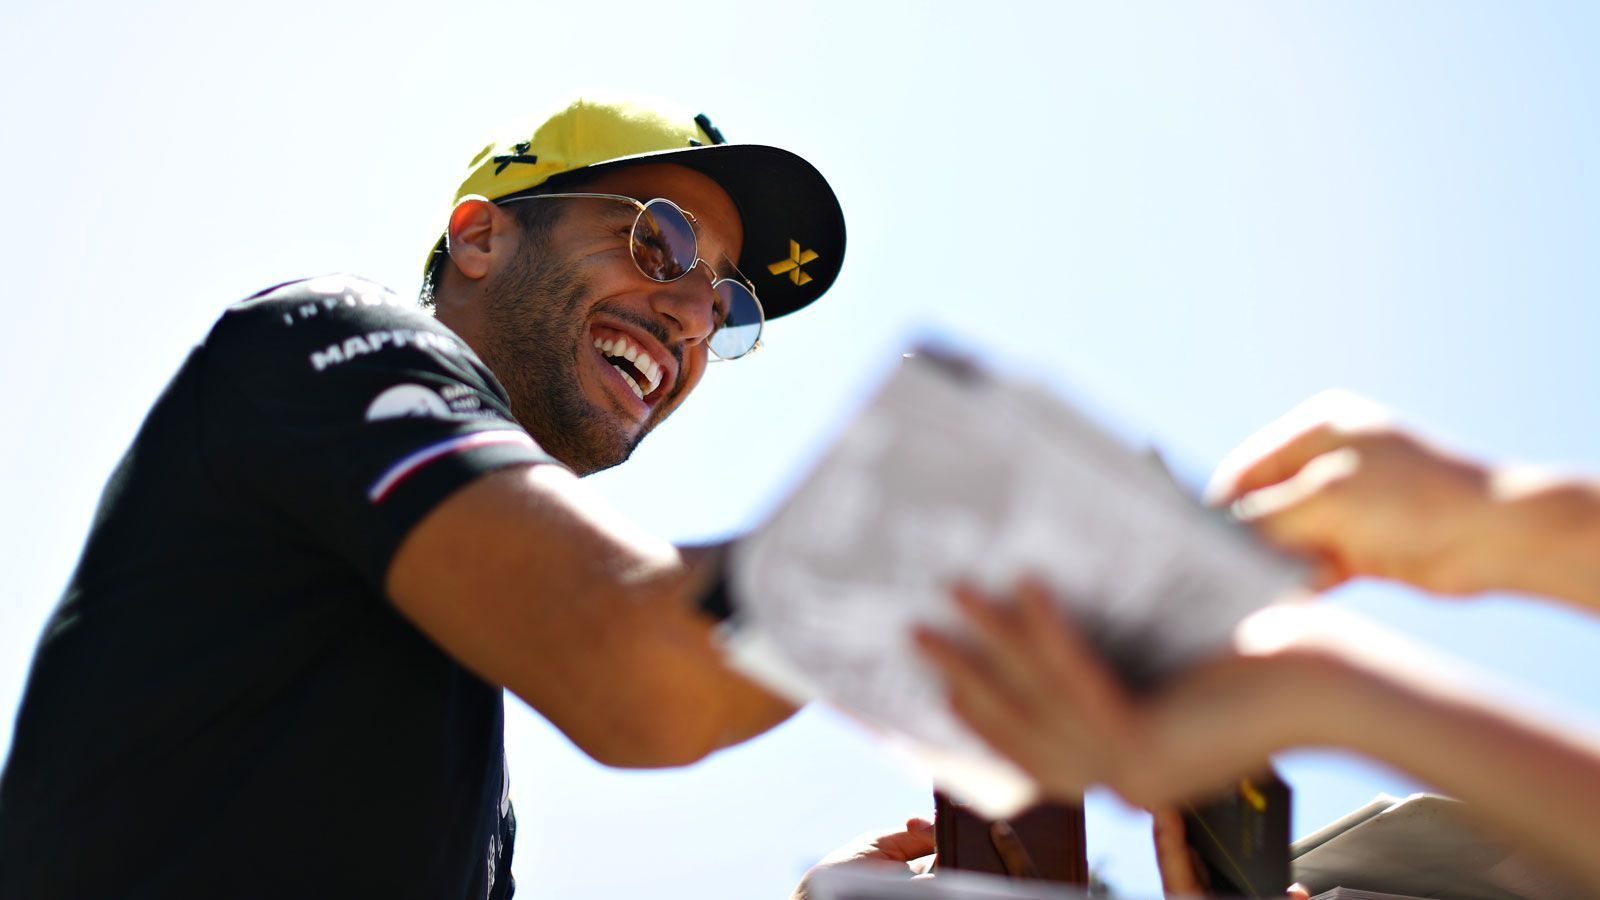 
                <strong>Daniel Ricciardo (Renault F1 Team)</strong><br>
                Die Hoffnung auf Siege erfüllte sich bei Daniel Ricciardo nach seinem Wechsel von Red Bull zu Renault noch nicht. Der stets gut gelaunte Australier greift auch 2020 für die Franzosen ins Lenkrad. Wie es danach weitergehen soll, ist unklar.Vertrag bis: Ende 2020
              